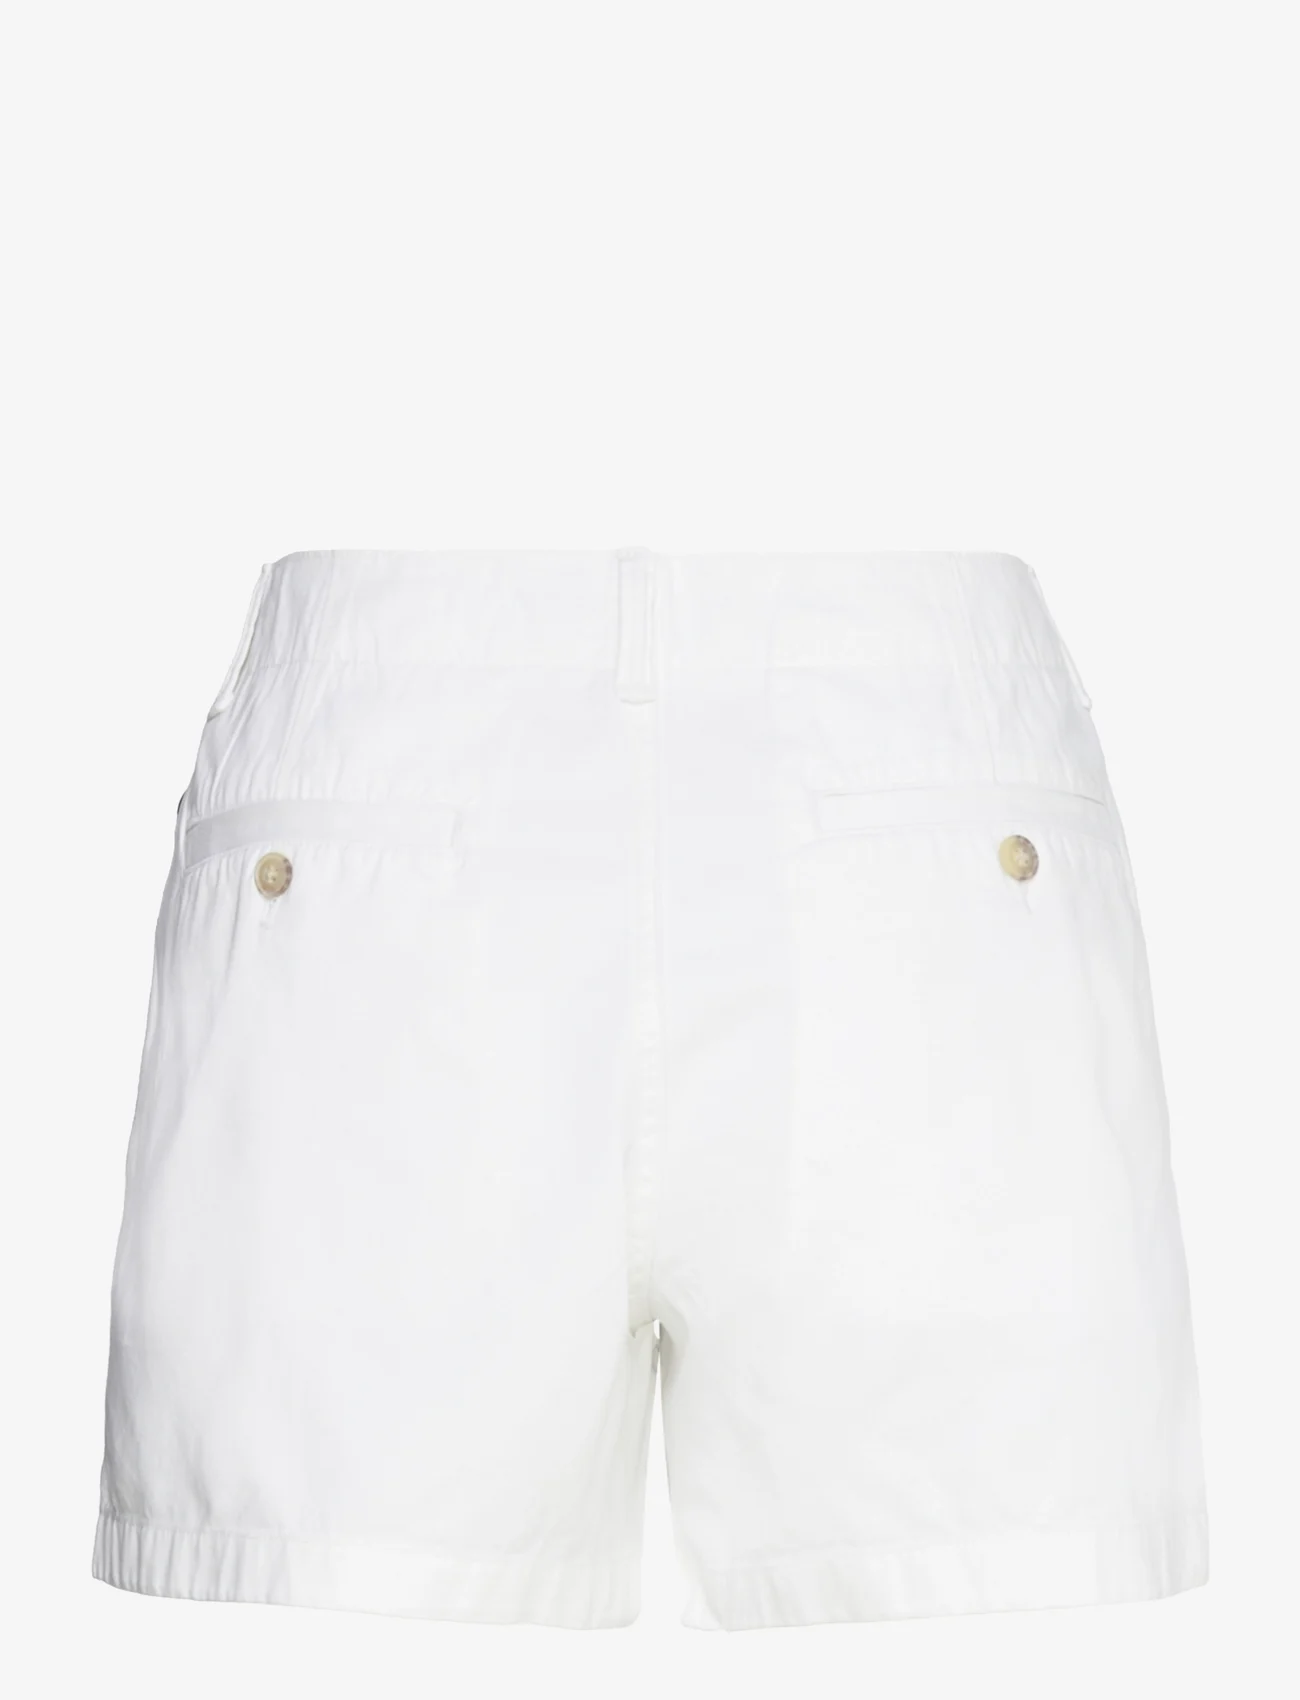 Polo Ralph Lauren - Chino Twill Short - chino shorts - deckwash white - 1